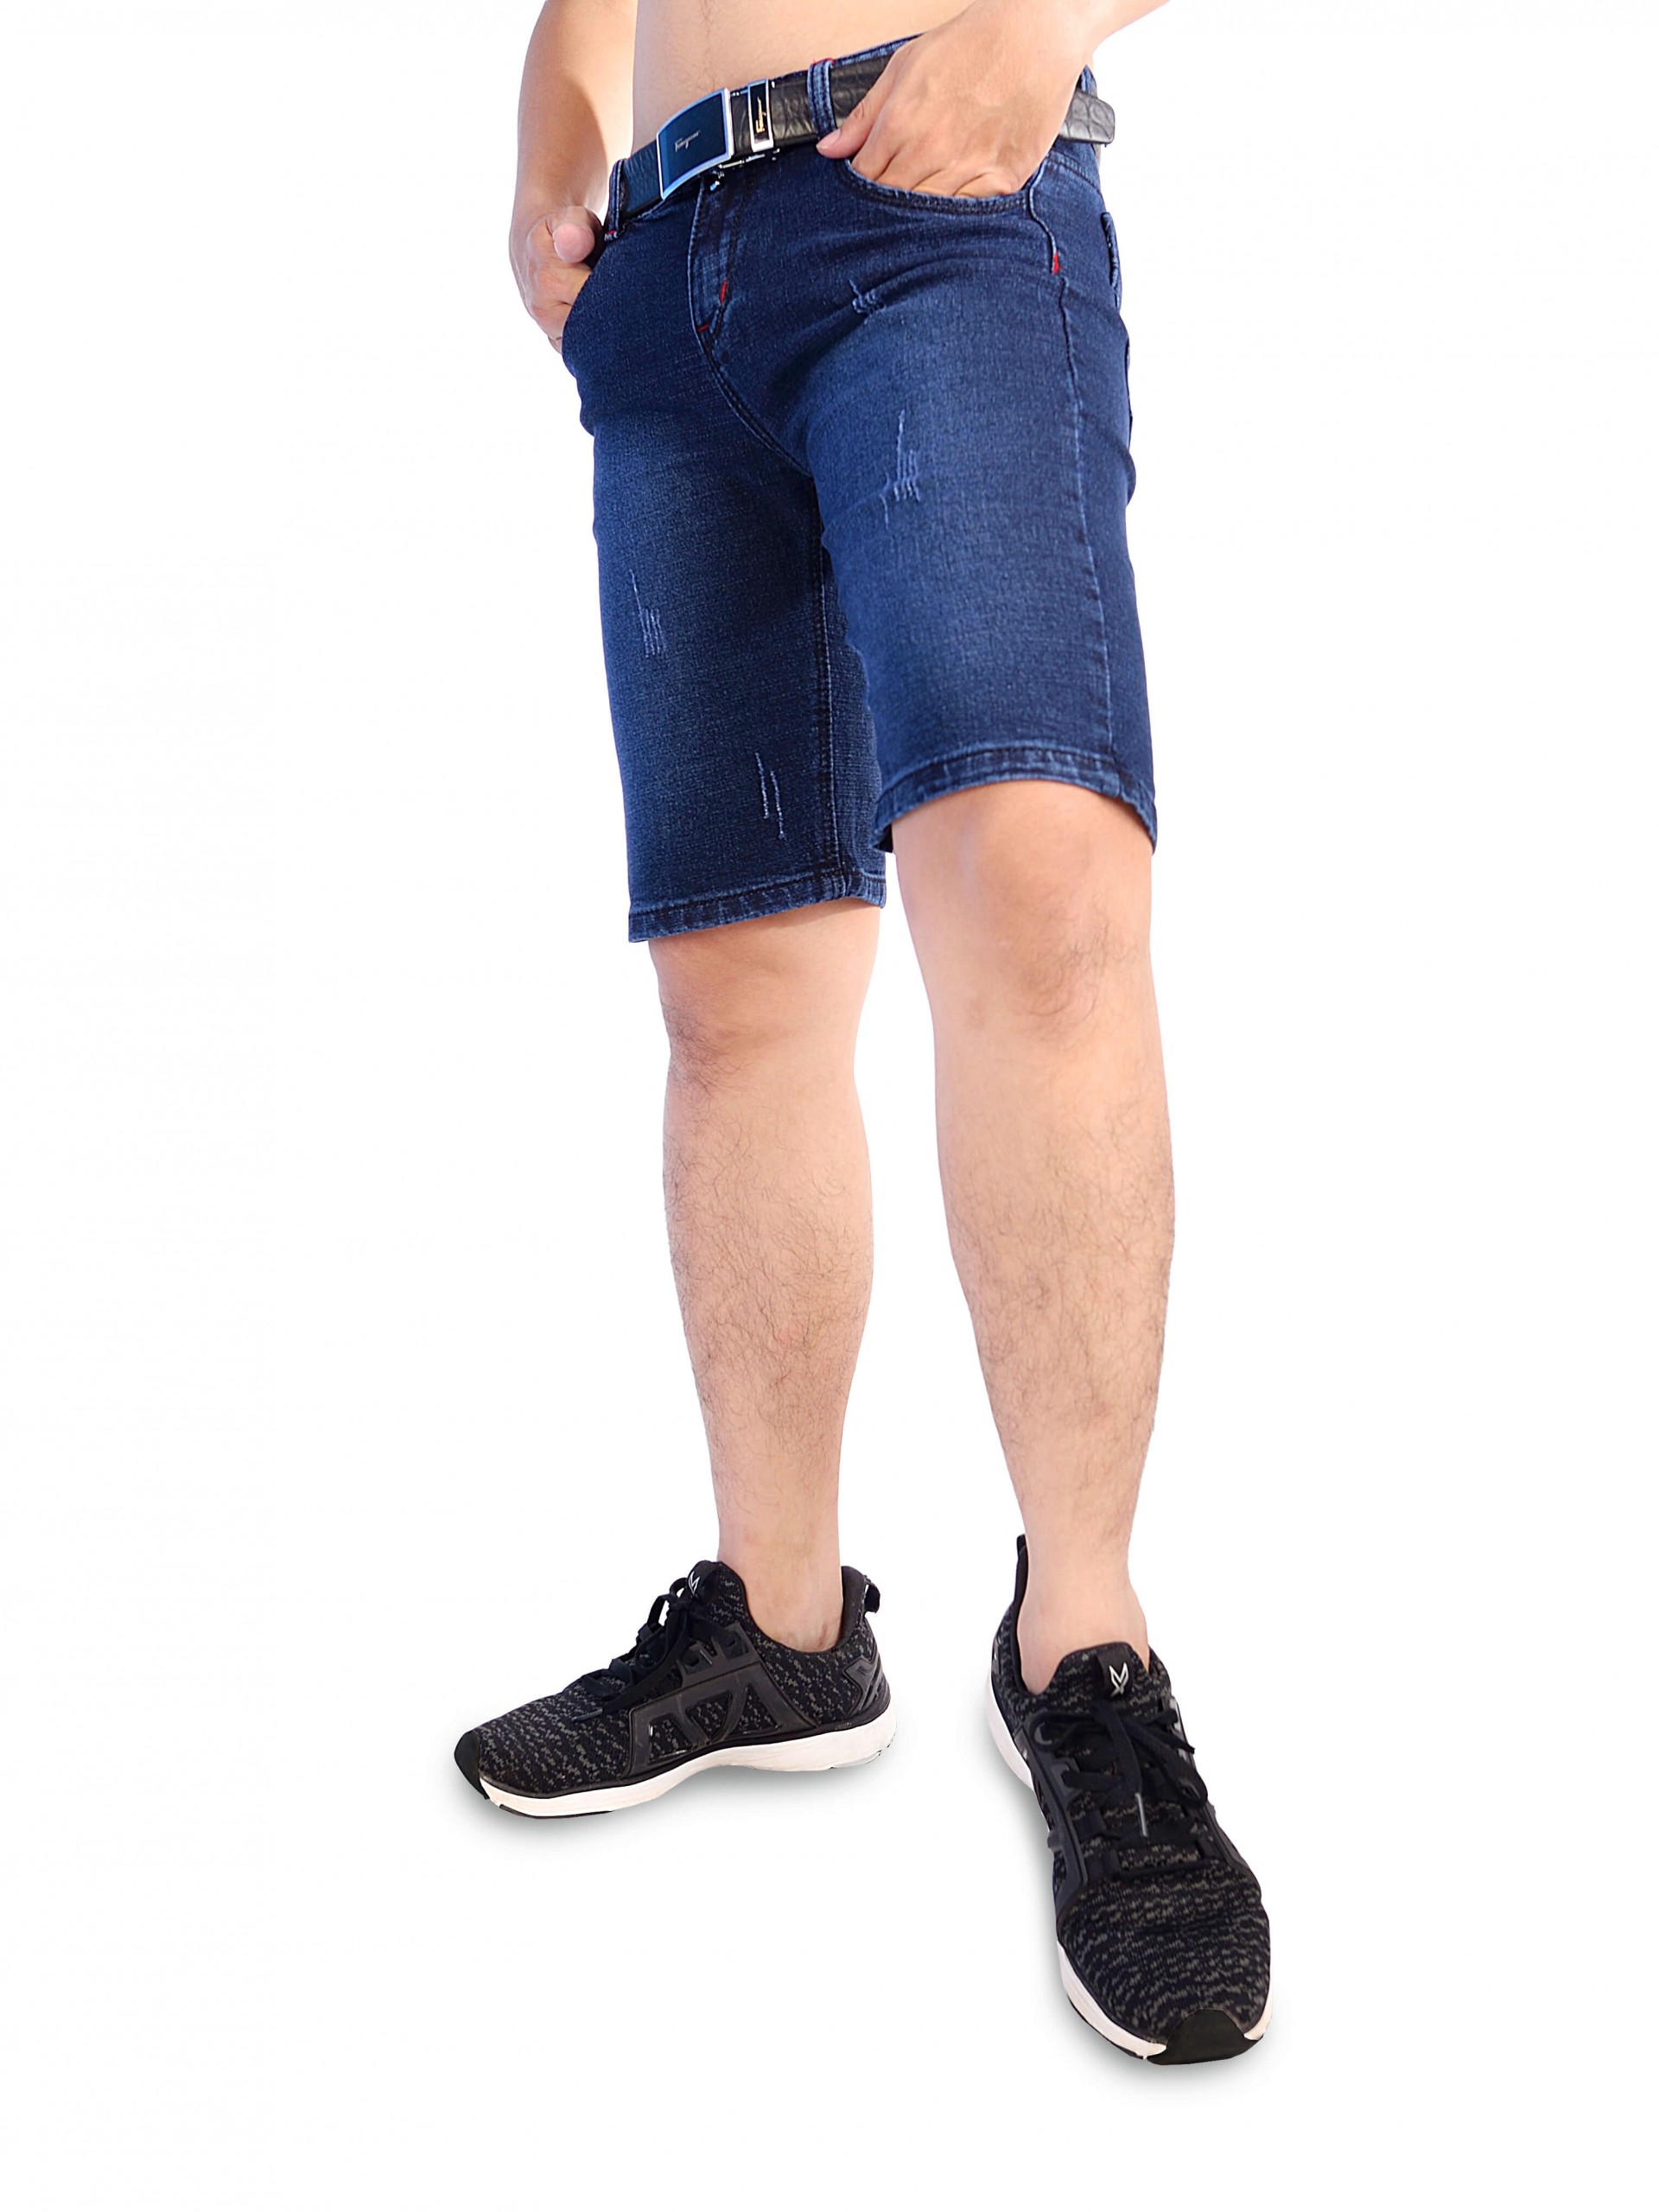 03 mẫu quần short jeans nam và cách phối đồ không lỗi mốt